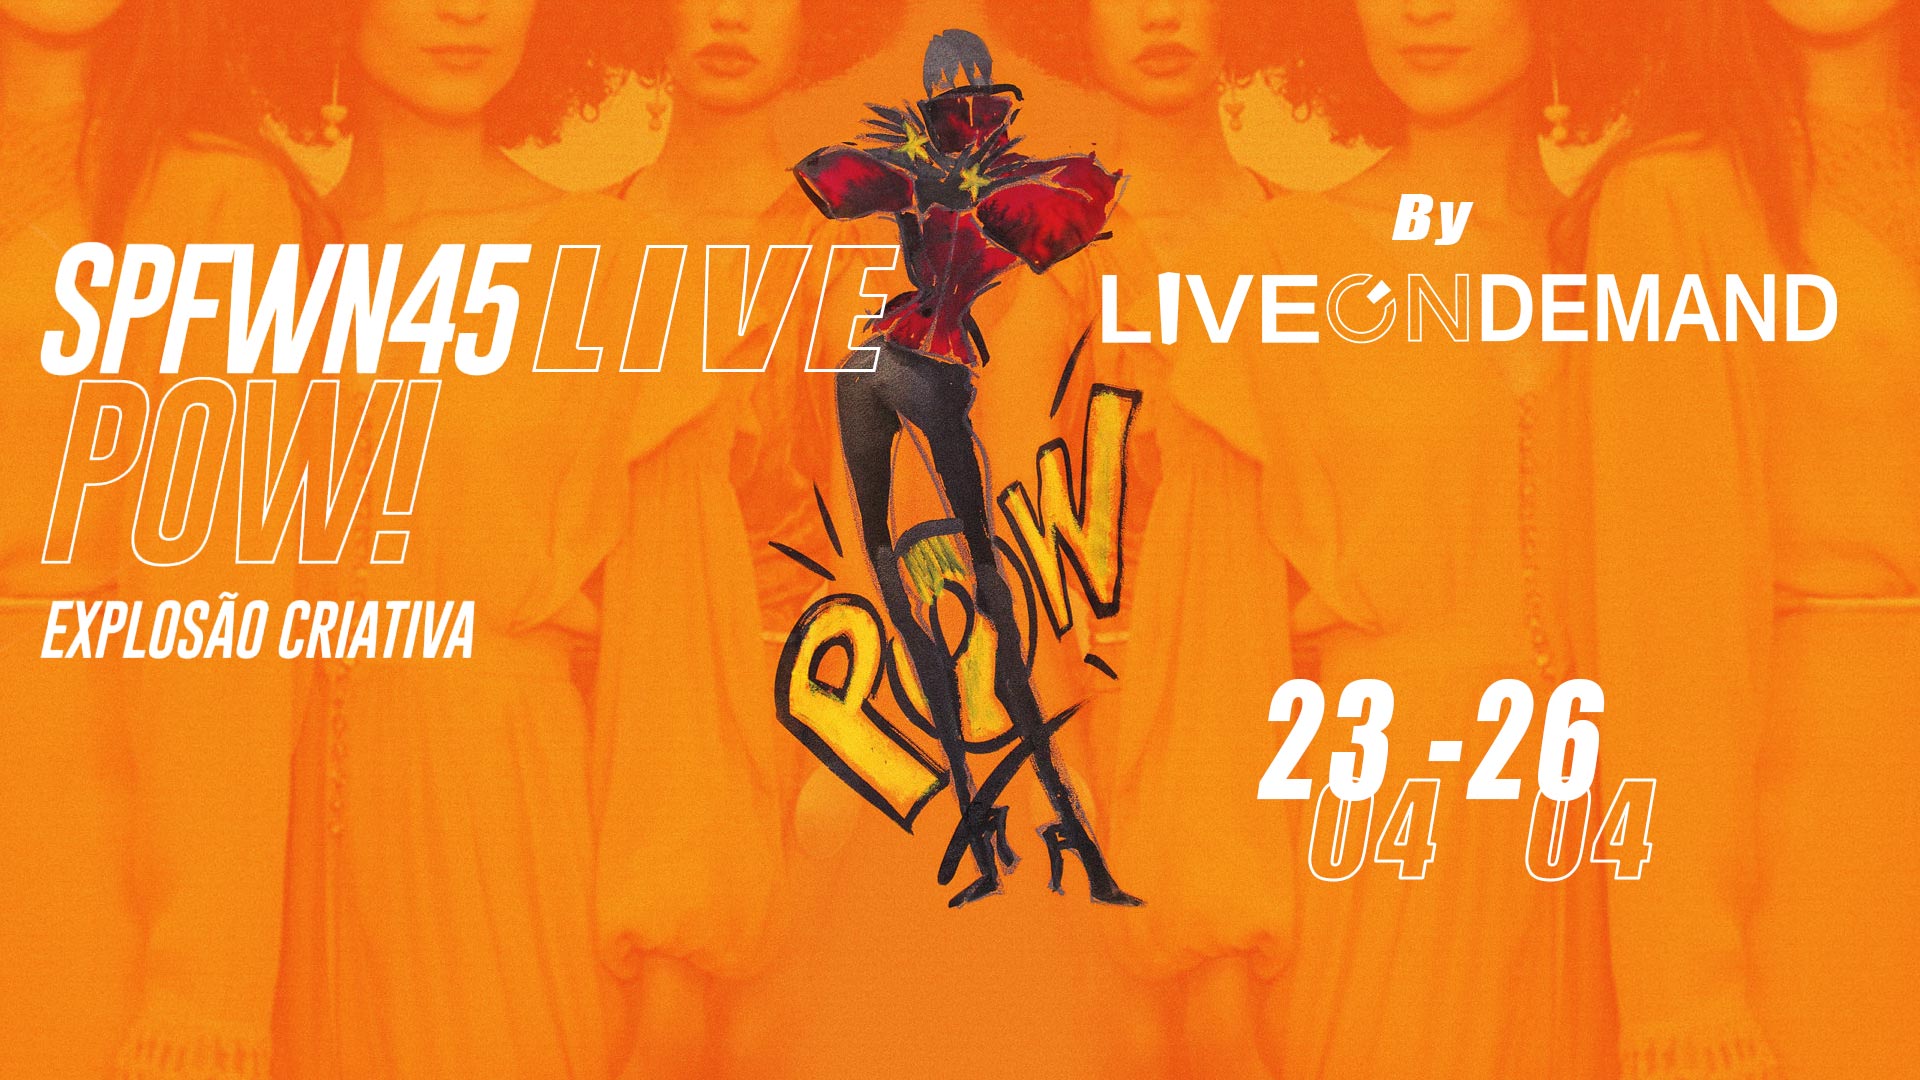 #SPFWN45LIVE ,Livestreaming, webinar, fashion tv, produtora de live